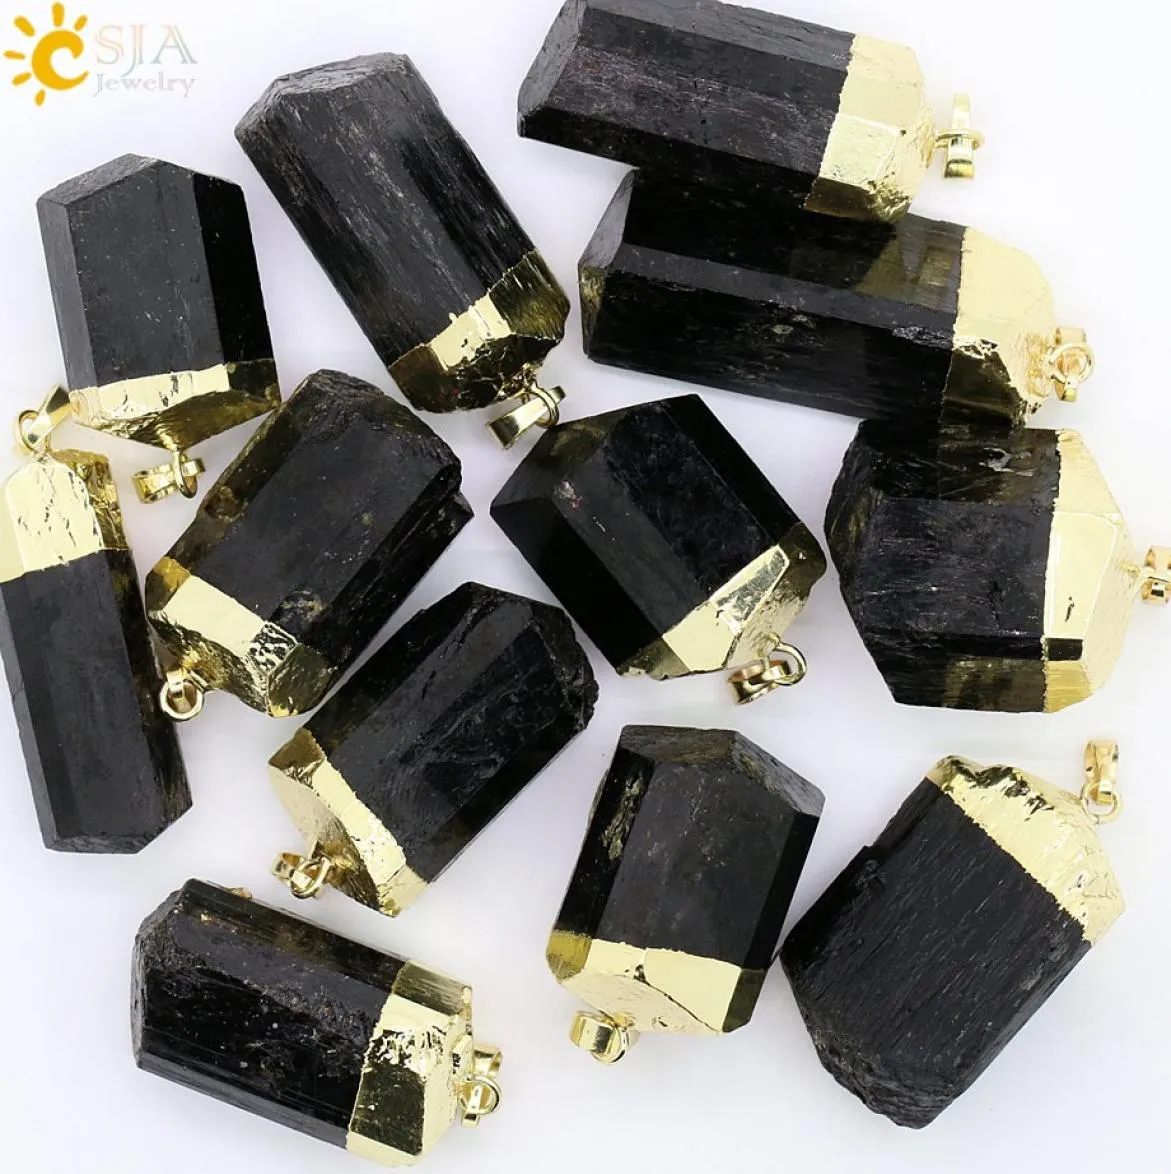 CSJA 1 Pc naturel noir Tourmaline minerai pierres précieuses Surface brute pierre guérison Reiki perle pendentif Nunatak énergie Chakra pendentifs pour hommes W5819491